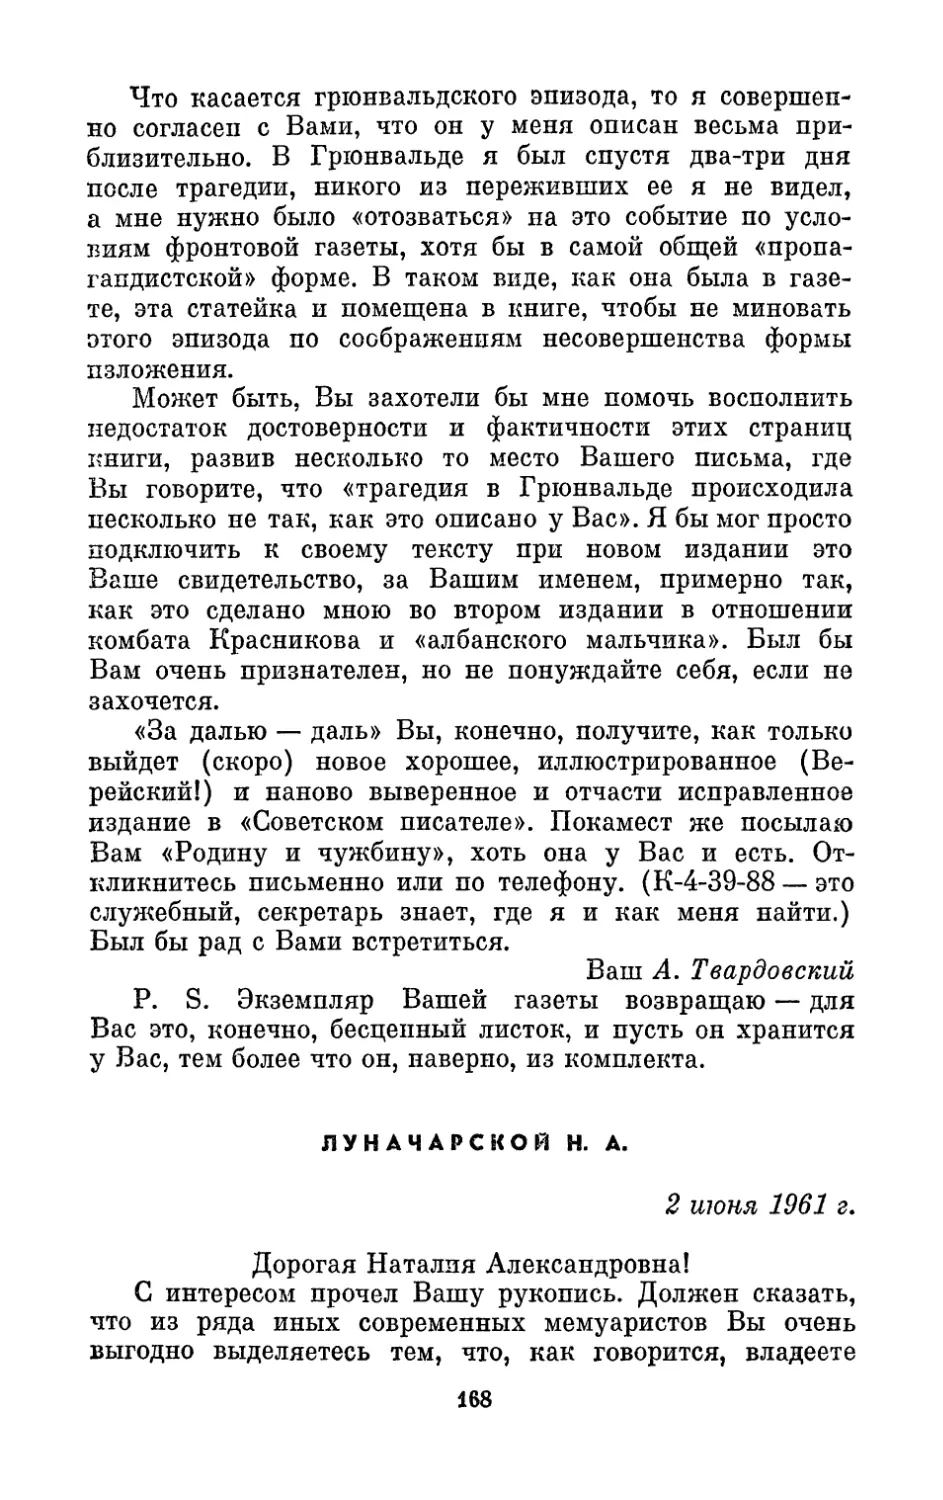 Луначарской Н. А., 2 июня 1961 г.